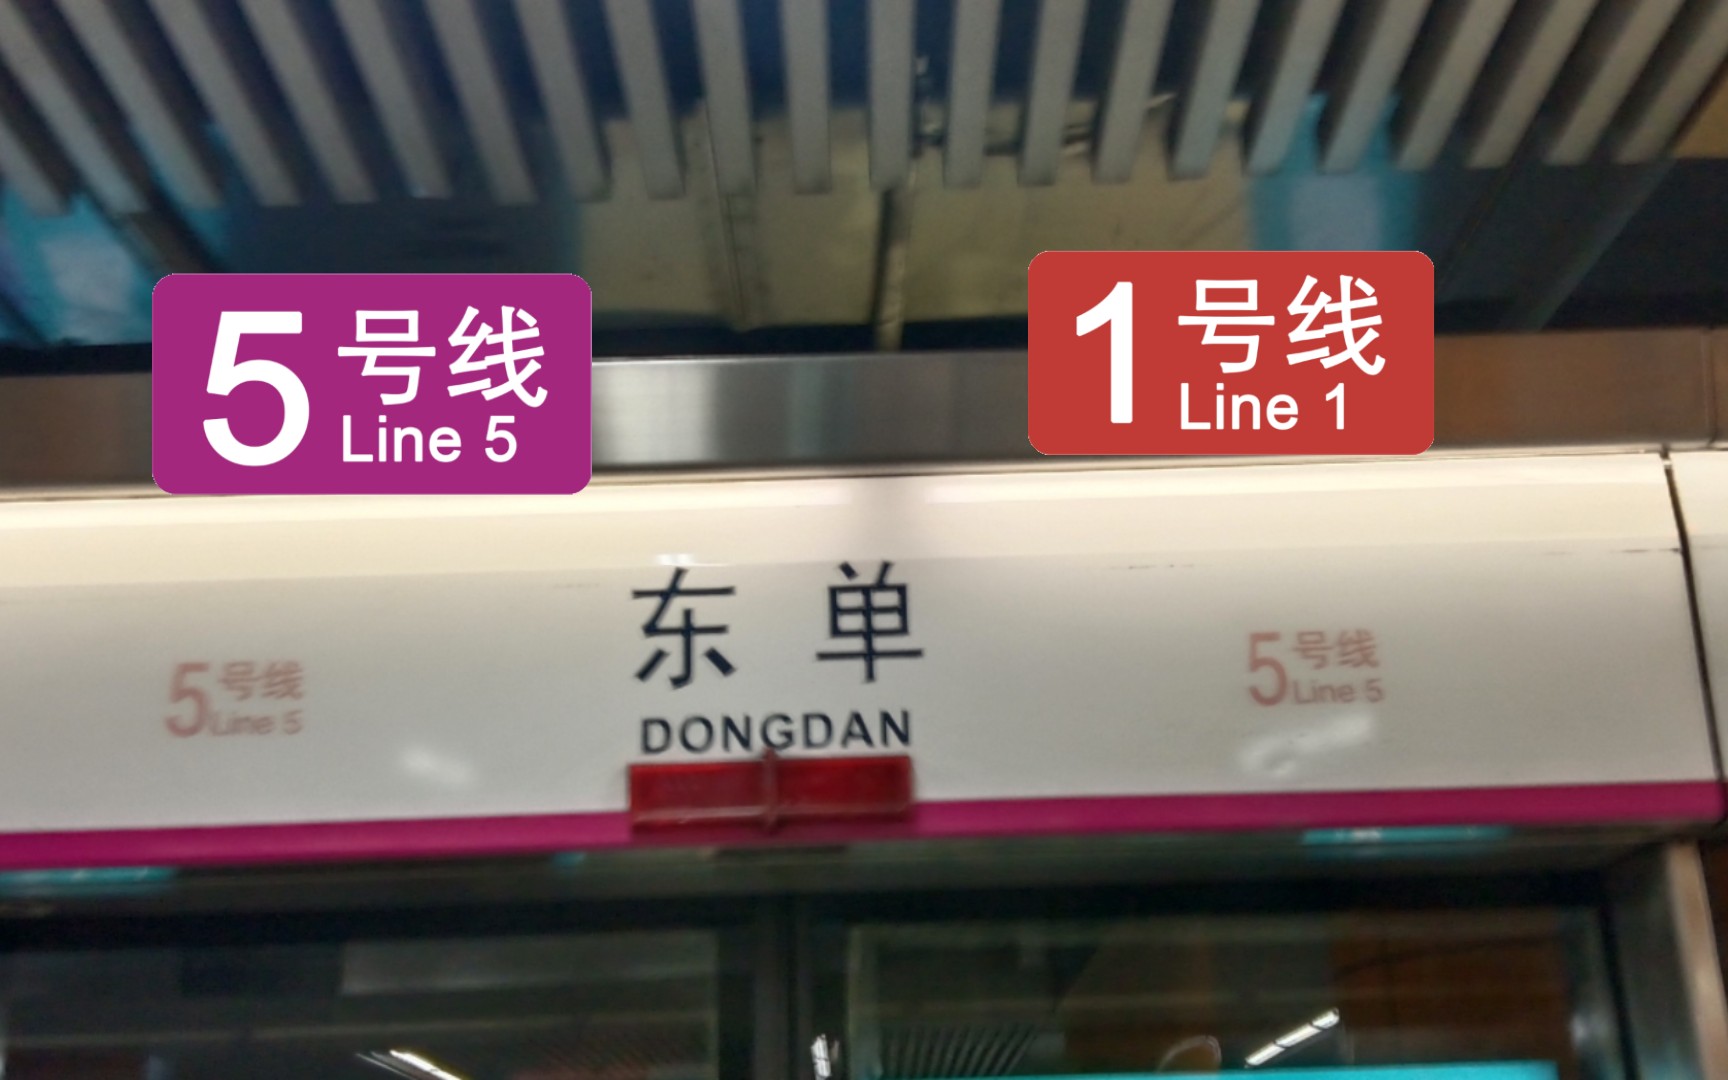 北京地铁:2007年的线路与复八线换乘站,东单,五号线换乘一号线实录